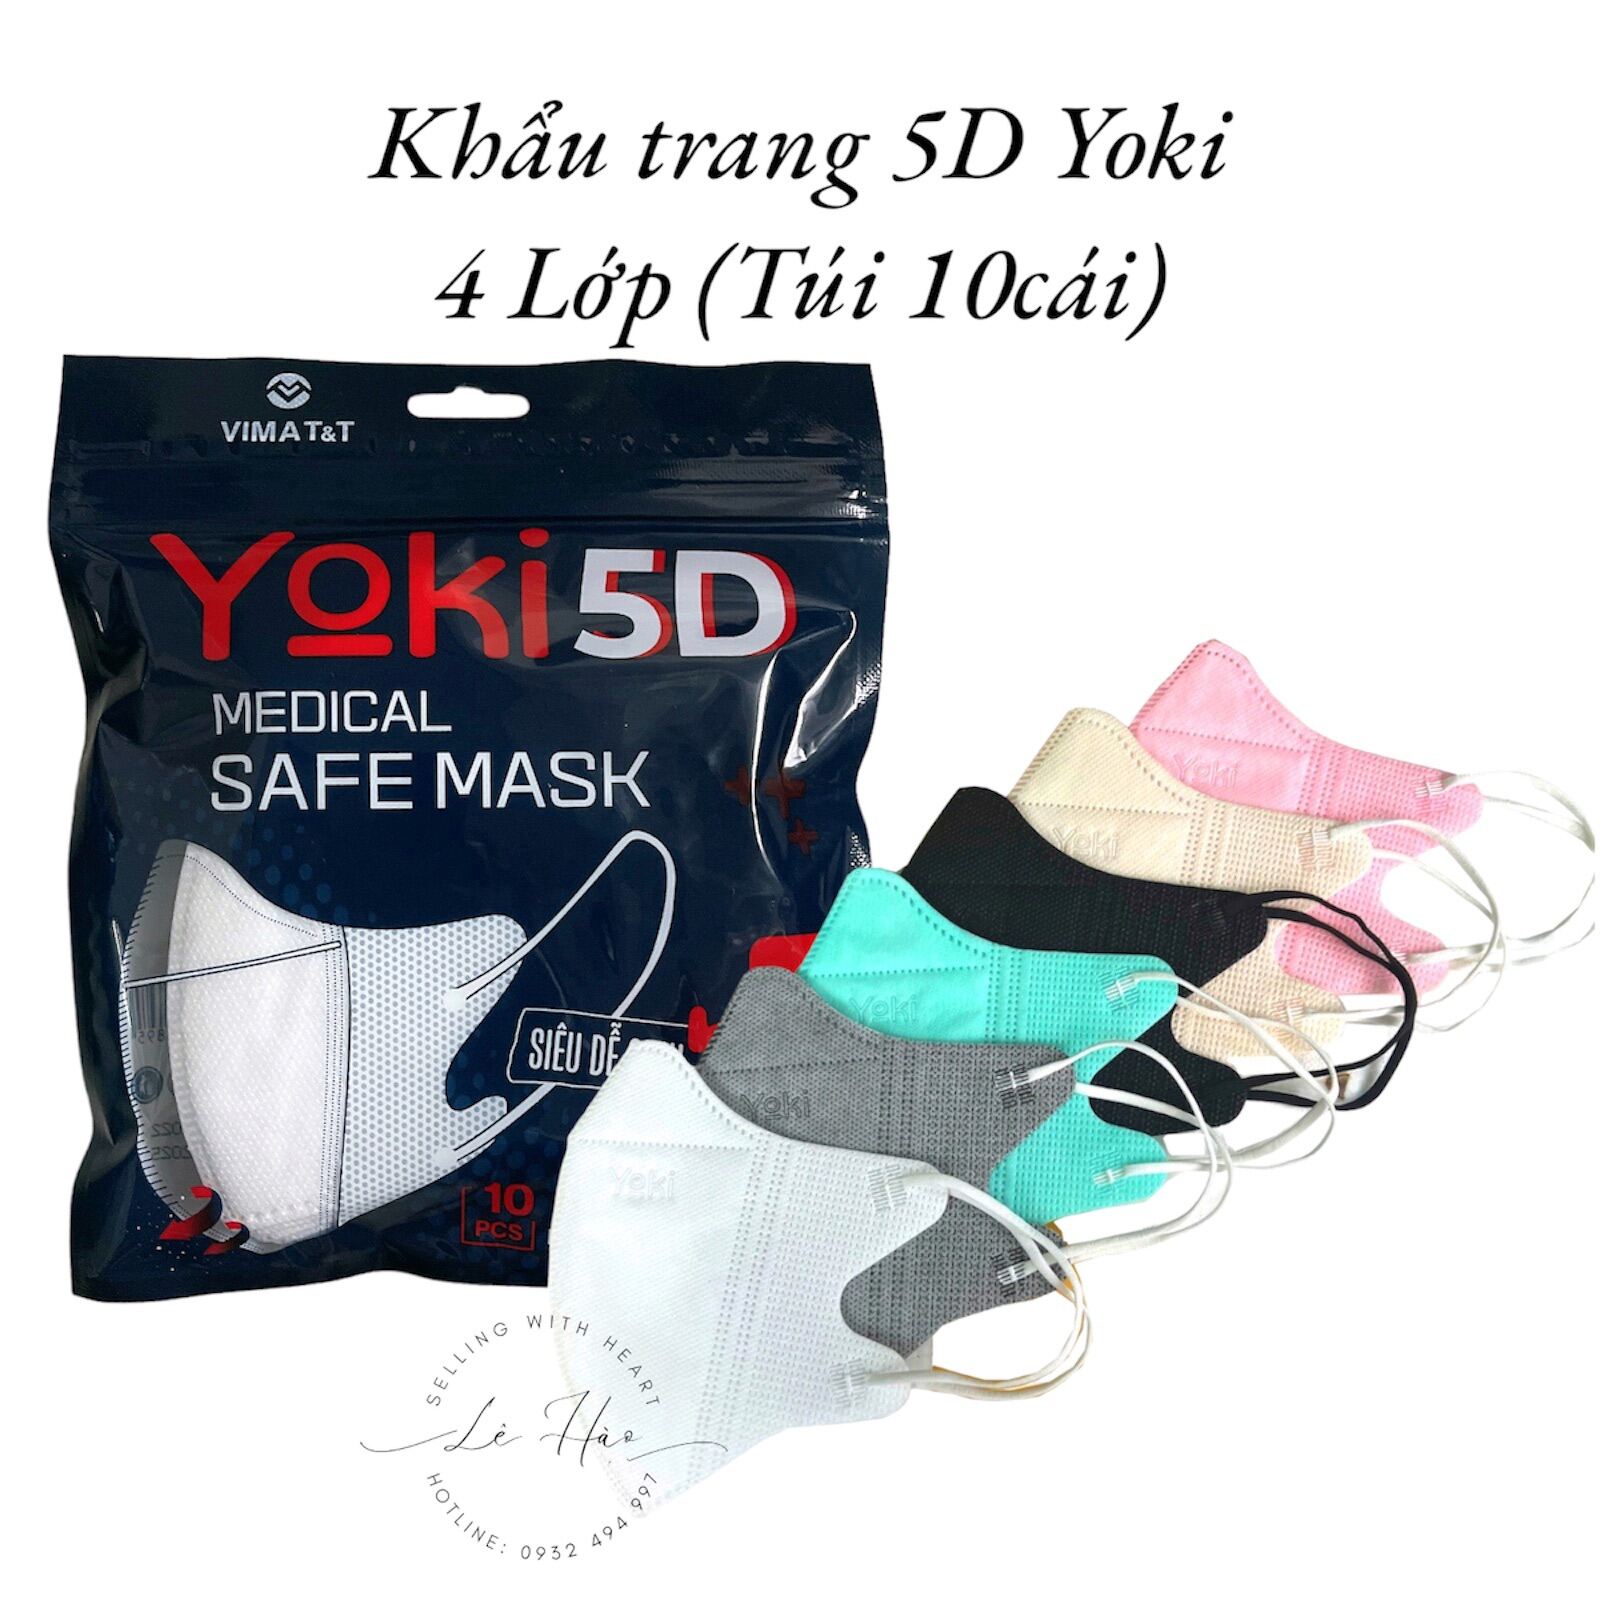 Khẩu Trang 5D Yoki 4Lớp kháng khuẩn quai chun co dãn ,hàng chính hãng ,phong cách HQ